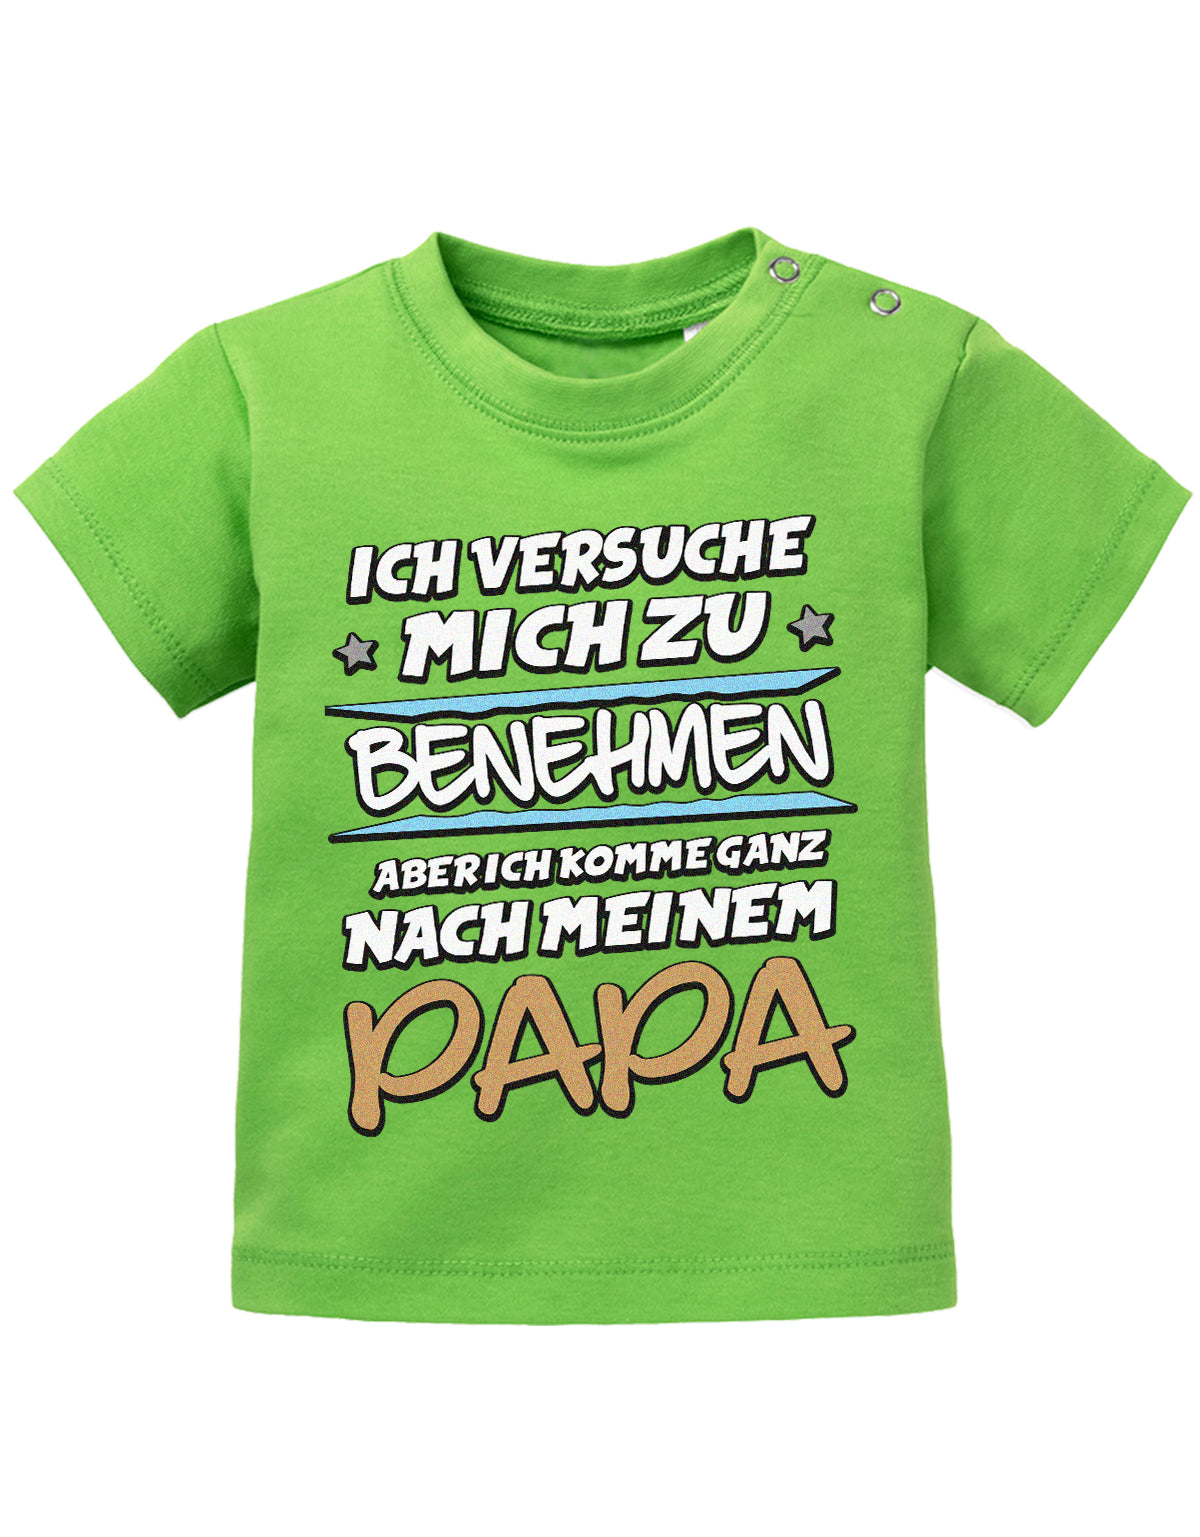 Papa Spruch Baby Shirt. Ich versuche mich zu benehmen, aber ich komme ganz nach meinem Papa. Grün